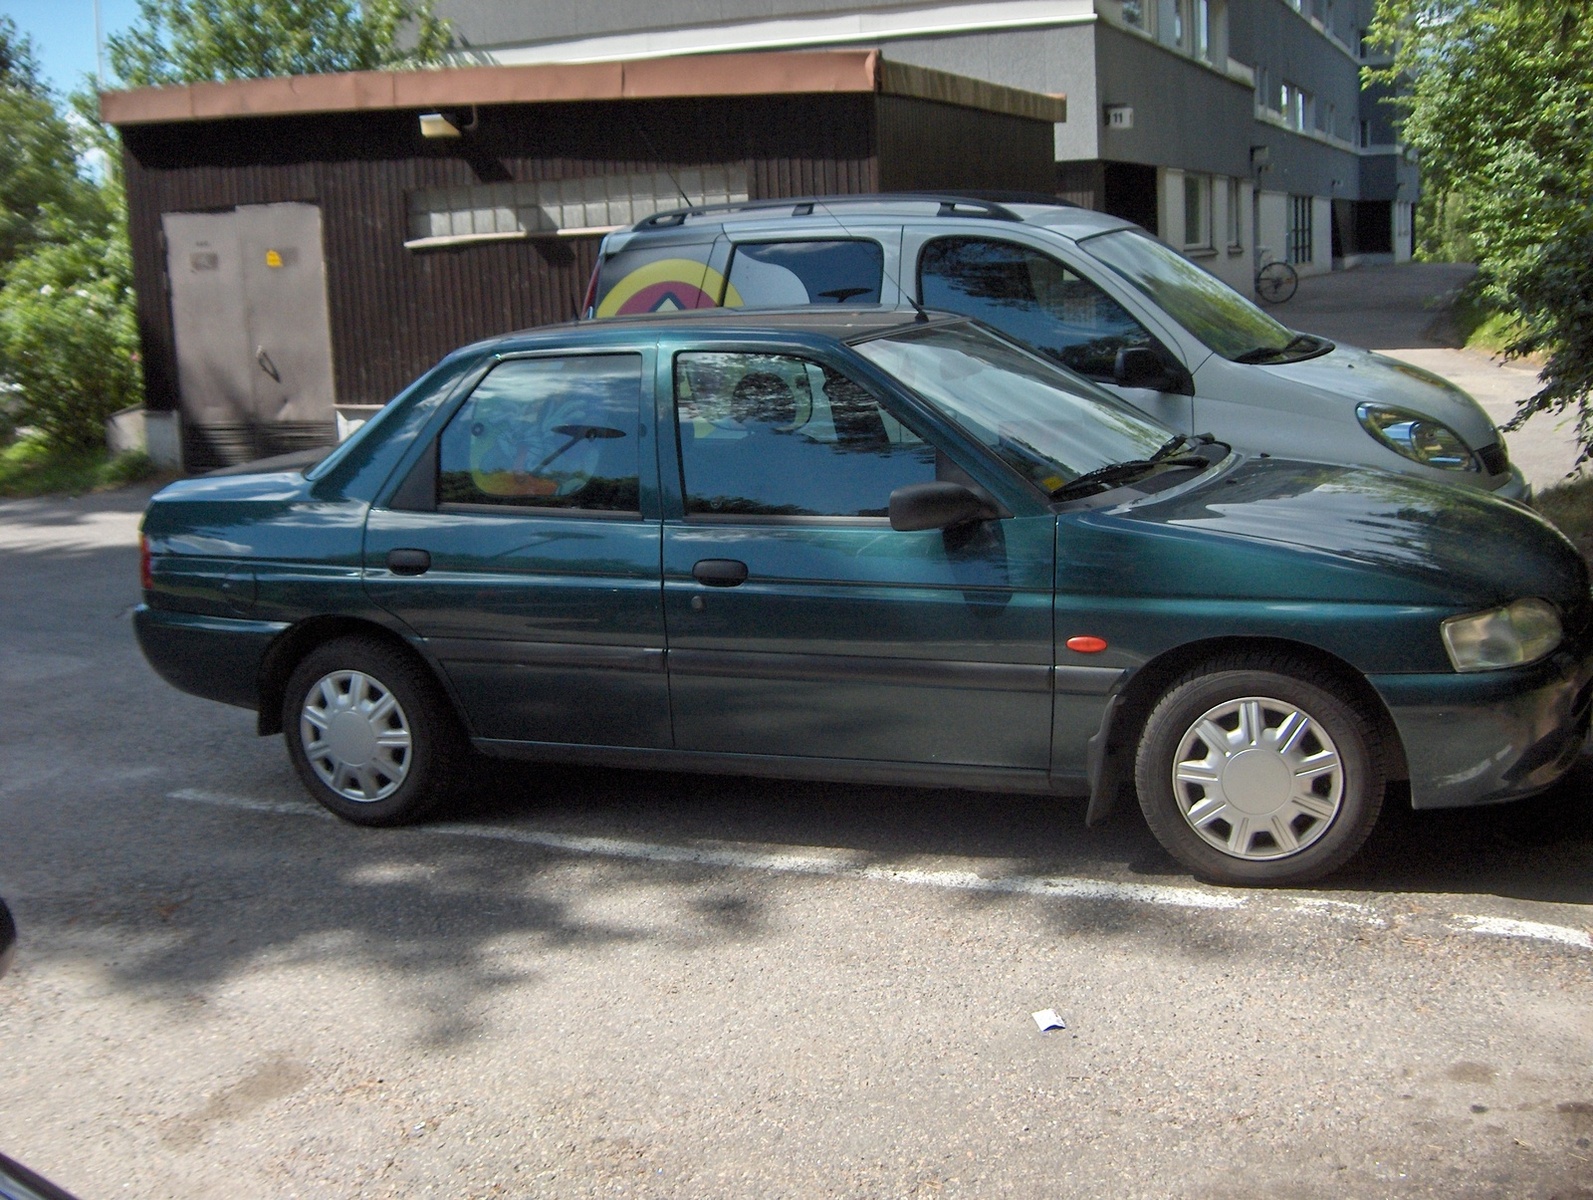 1997 Ford escort sedan review